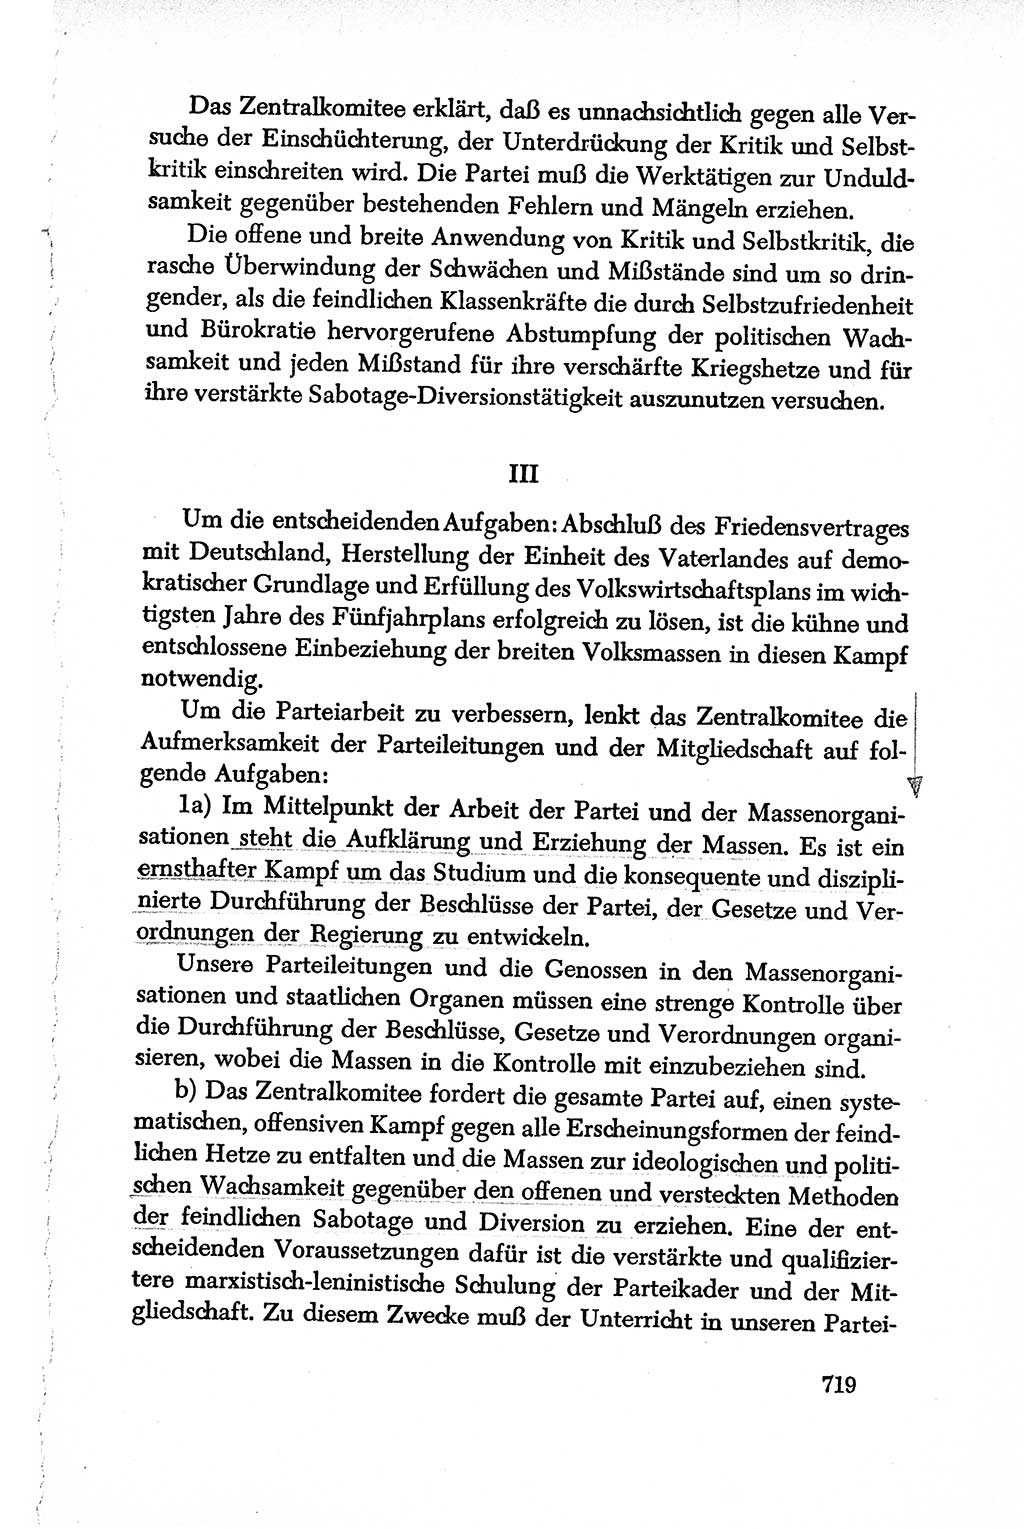 Dokumente der Sozialistischen Einheitspartei Deutschlands (SED) [Deutsche Demokratische Republik (DDR)] 1950-1952, Seite 719 (Dok. SED DDR 1950-1952, S. 719)